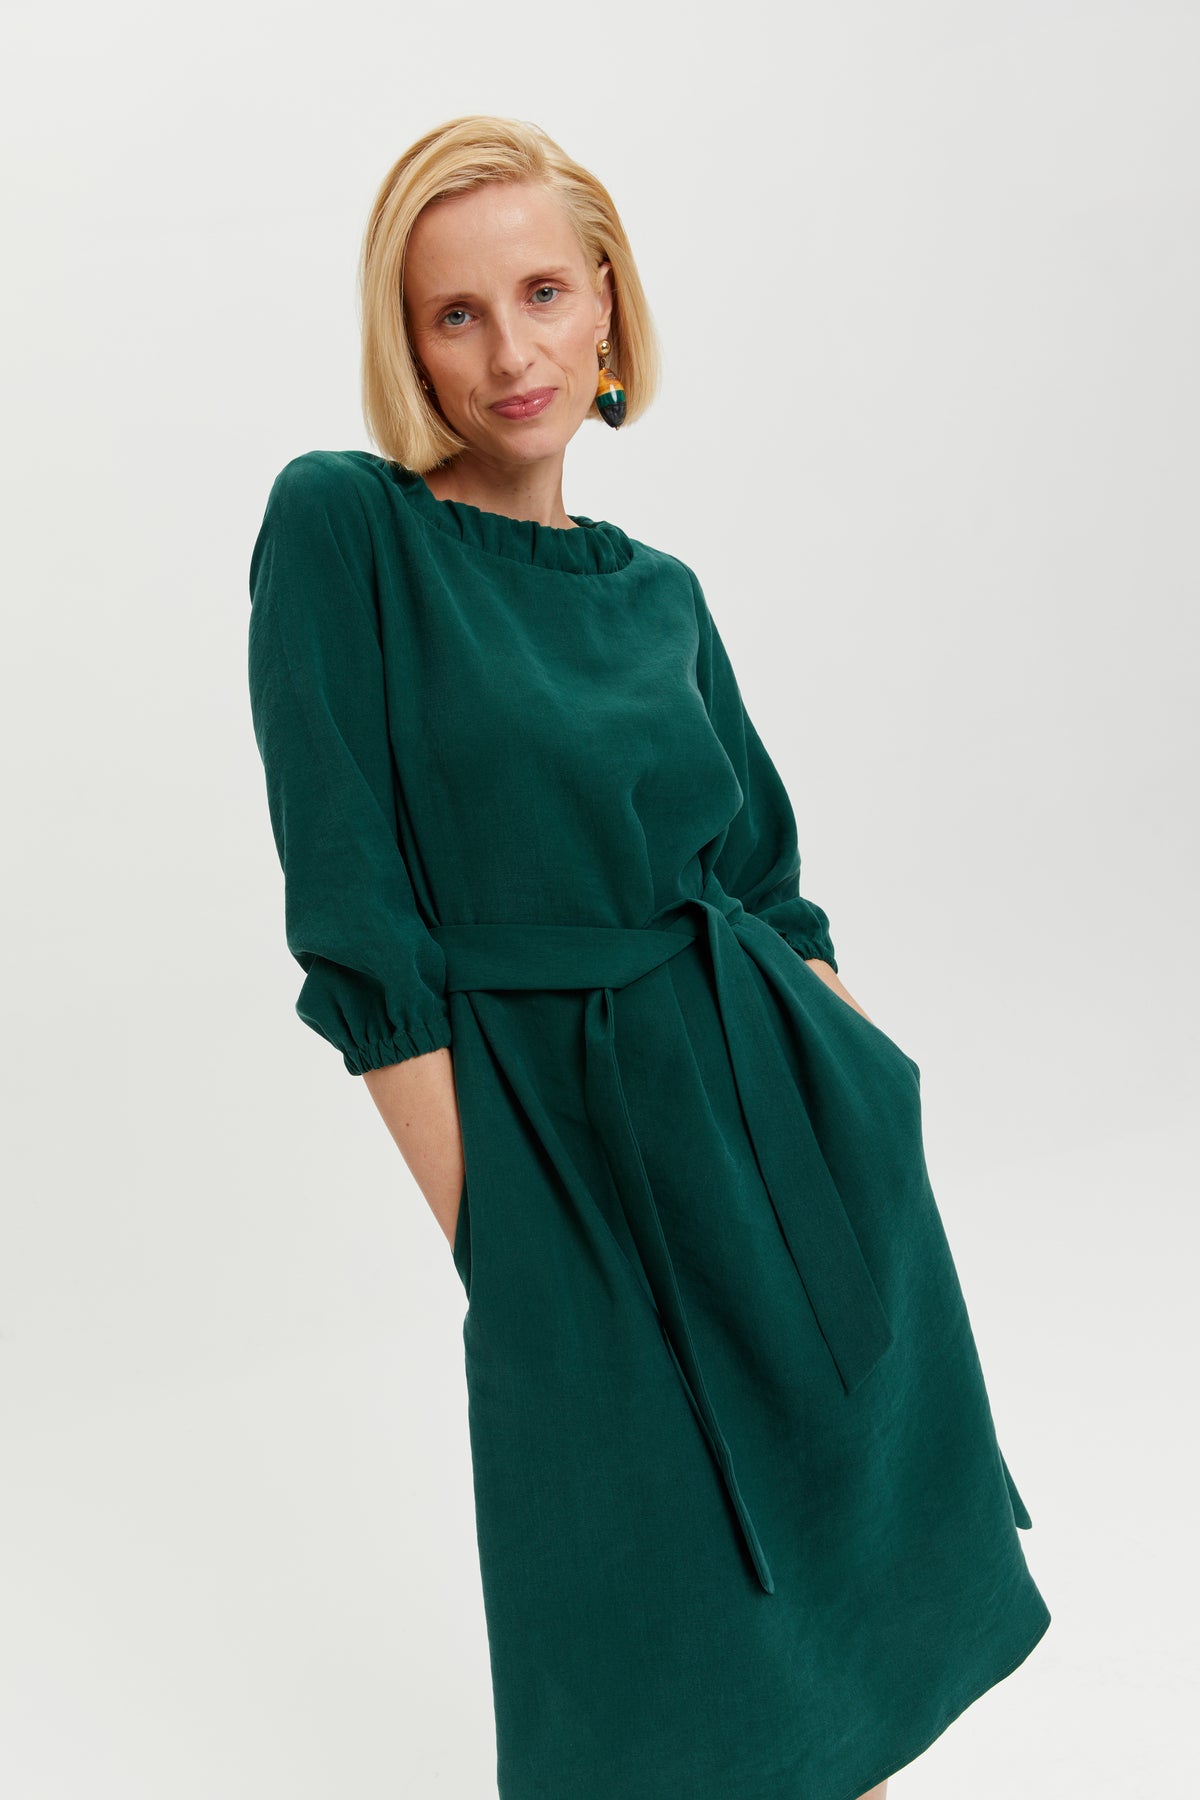 Celine | Elegant Belted Dress with Neckline Element in Forest Green